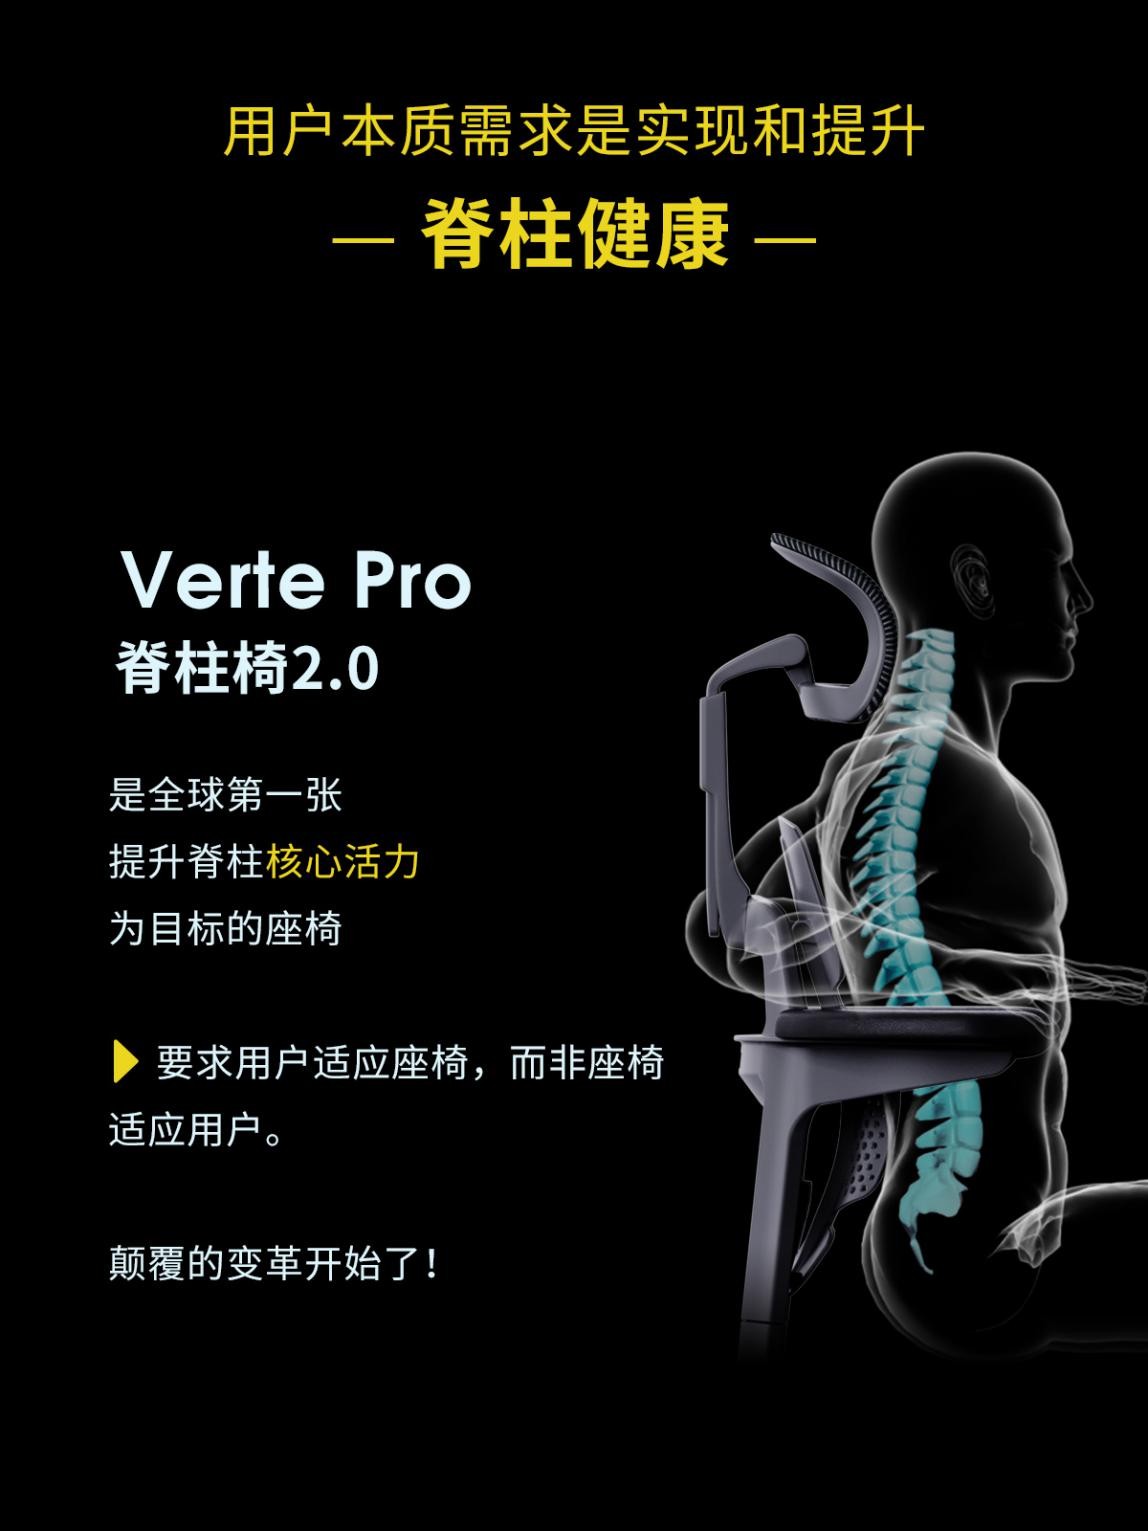 国内首张脊柱拉伸健康椅 摩伽VERTE PRO脊柱椅2.0首发上市